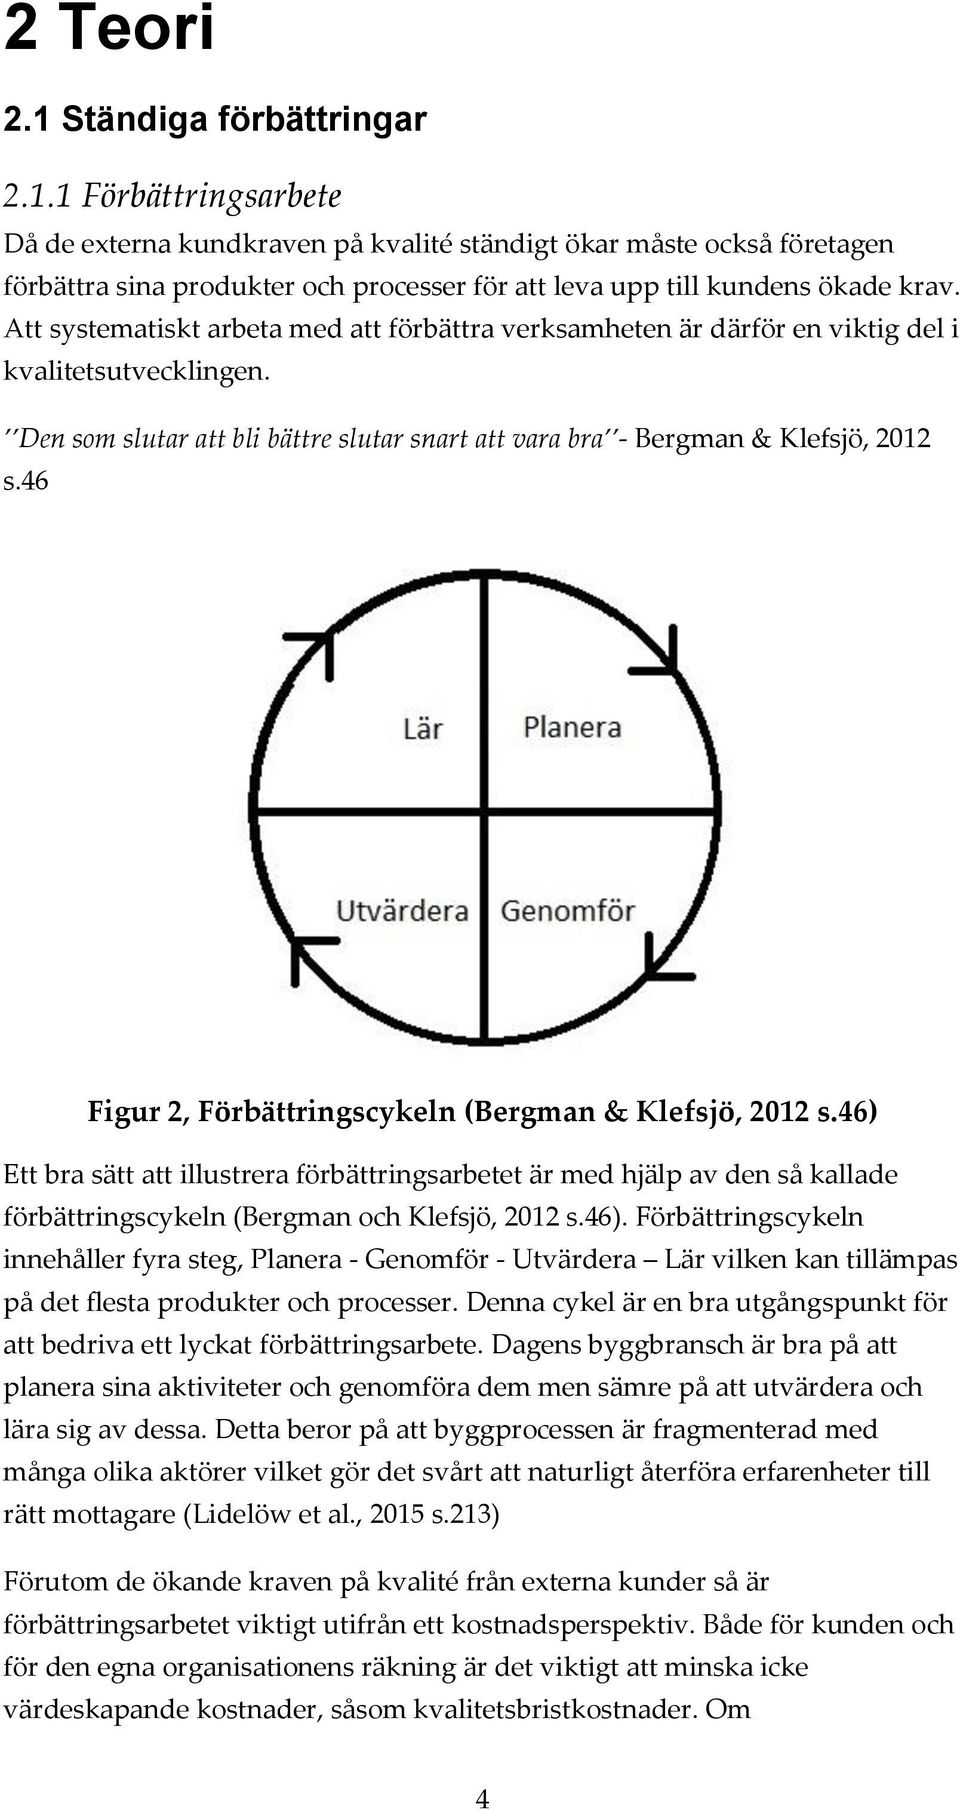 46 Figur 2, Förbättringscykeln (Bergman & Klefsjö, 2012 s.46) Ett bra sätt att illustrera förbättringsarbetet är med hjälp av den så kallade förbättringscykeln (Bergman och Klefsjö, 2012 s.46). Förbättringscykeln innehåller fyra steg, Planera - Genomför - Utvärdera Lär vilken kan tillämpas på det flesta produkter och processer.